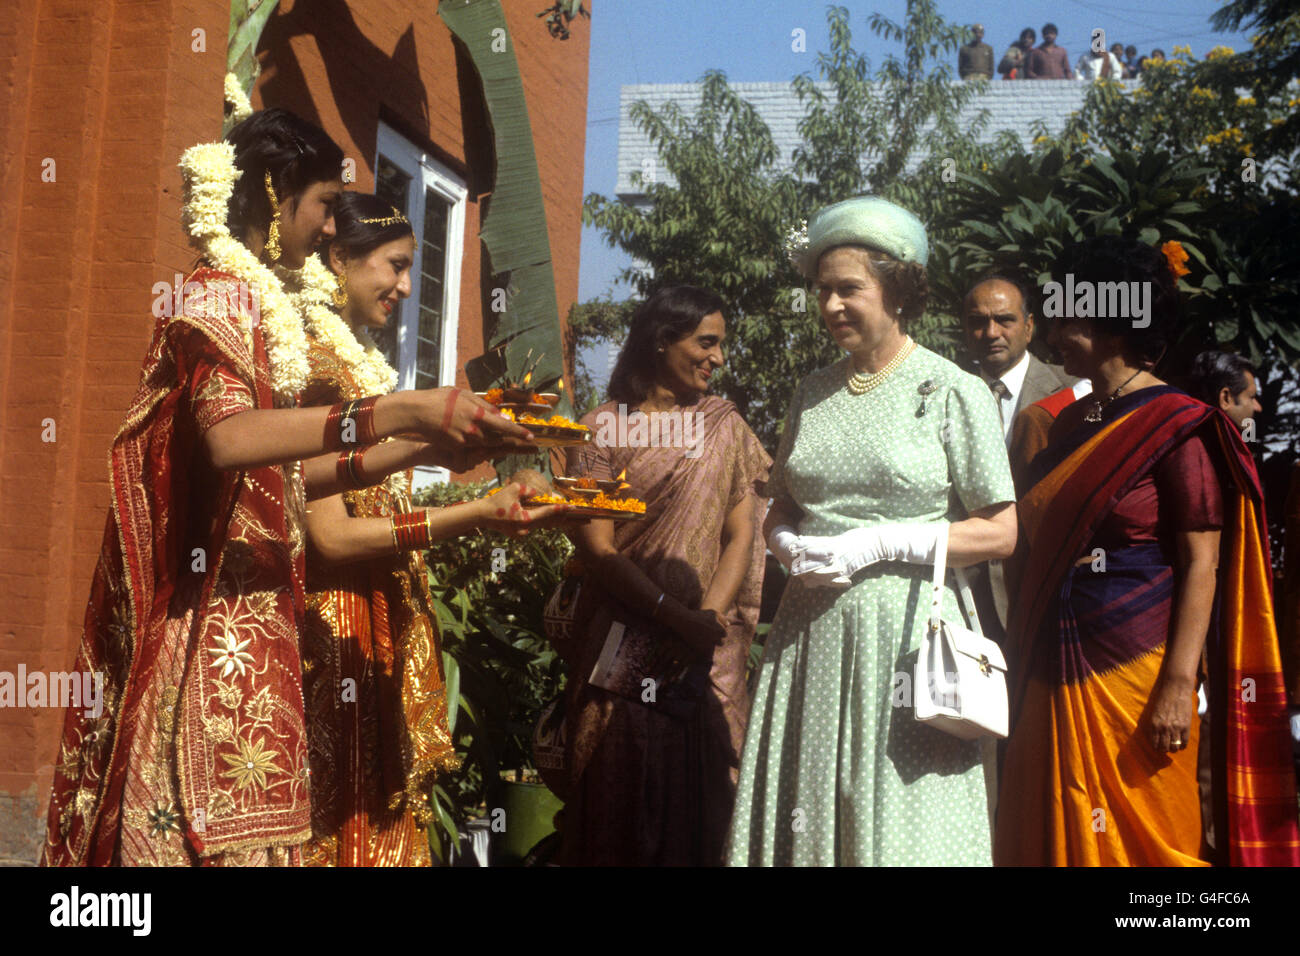 La regina viene offerta cibo da ragazze in abito tradizionale indiano al Mahatma Gandhi Memorial a Raj Ghat, Delhi. Gandhi fu qui cremato dopo il suo assassinio. Questa fu la seconda visita della Regina al sito, la prima fu nel 1961 quando piantò un albero. Foto Stock